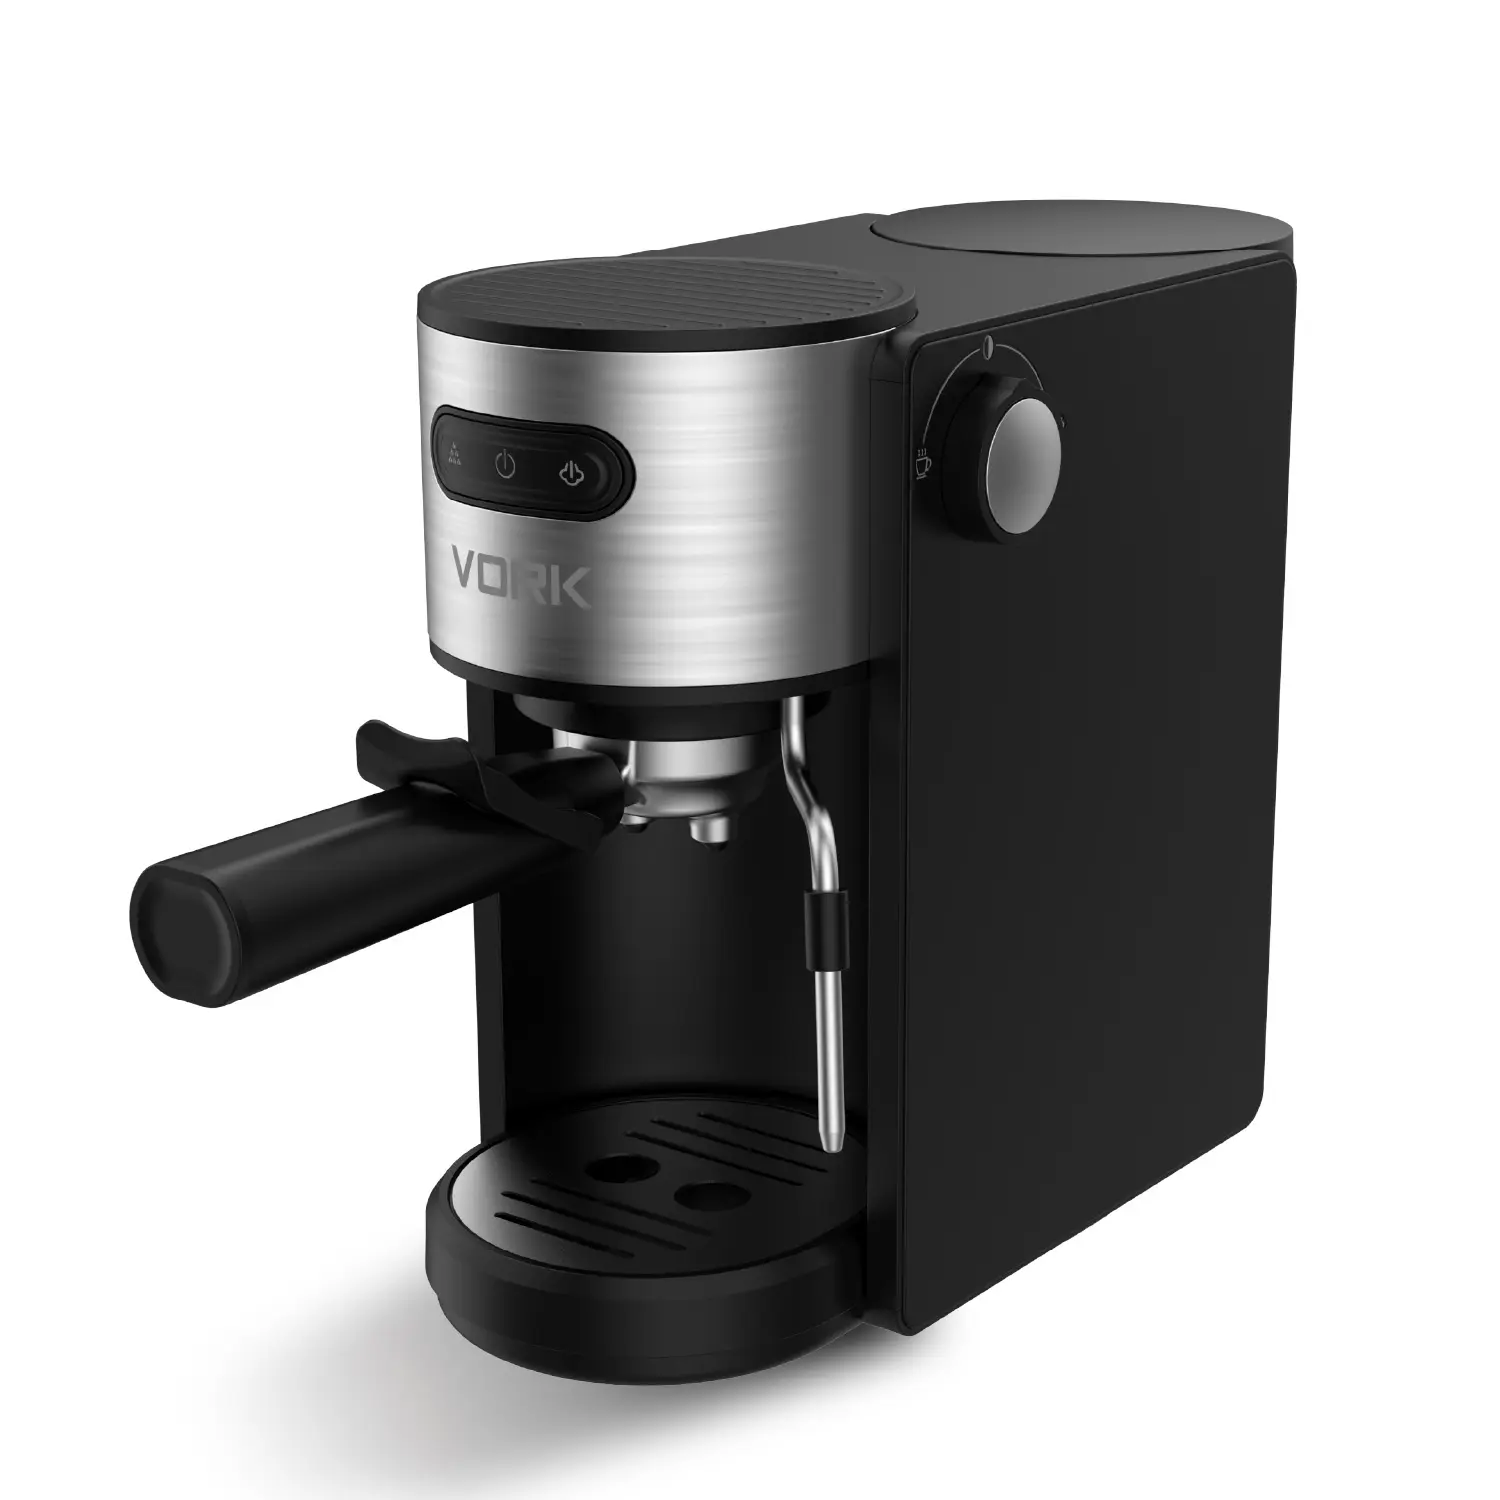 20 بار تصميم جديد صانع القهوة 20 بار مضخة الضغط صانع كابتشينو الكهربائية ODM 2 سنوات 1.3L ULKA